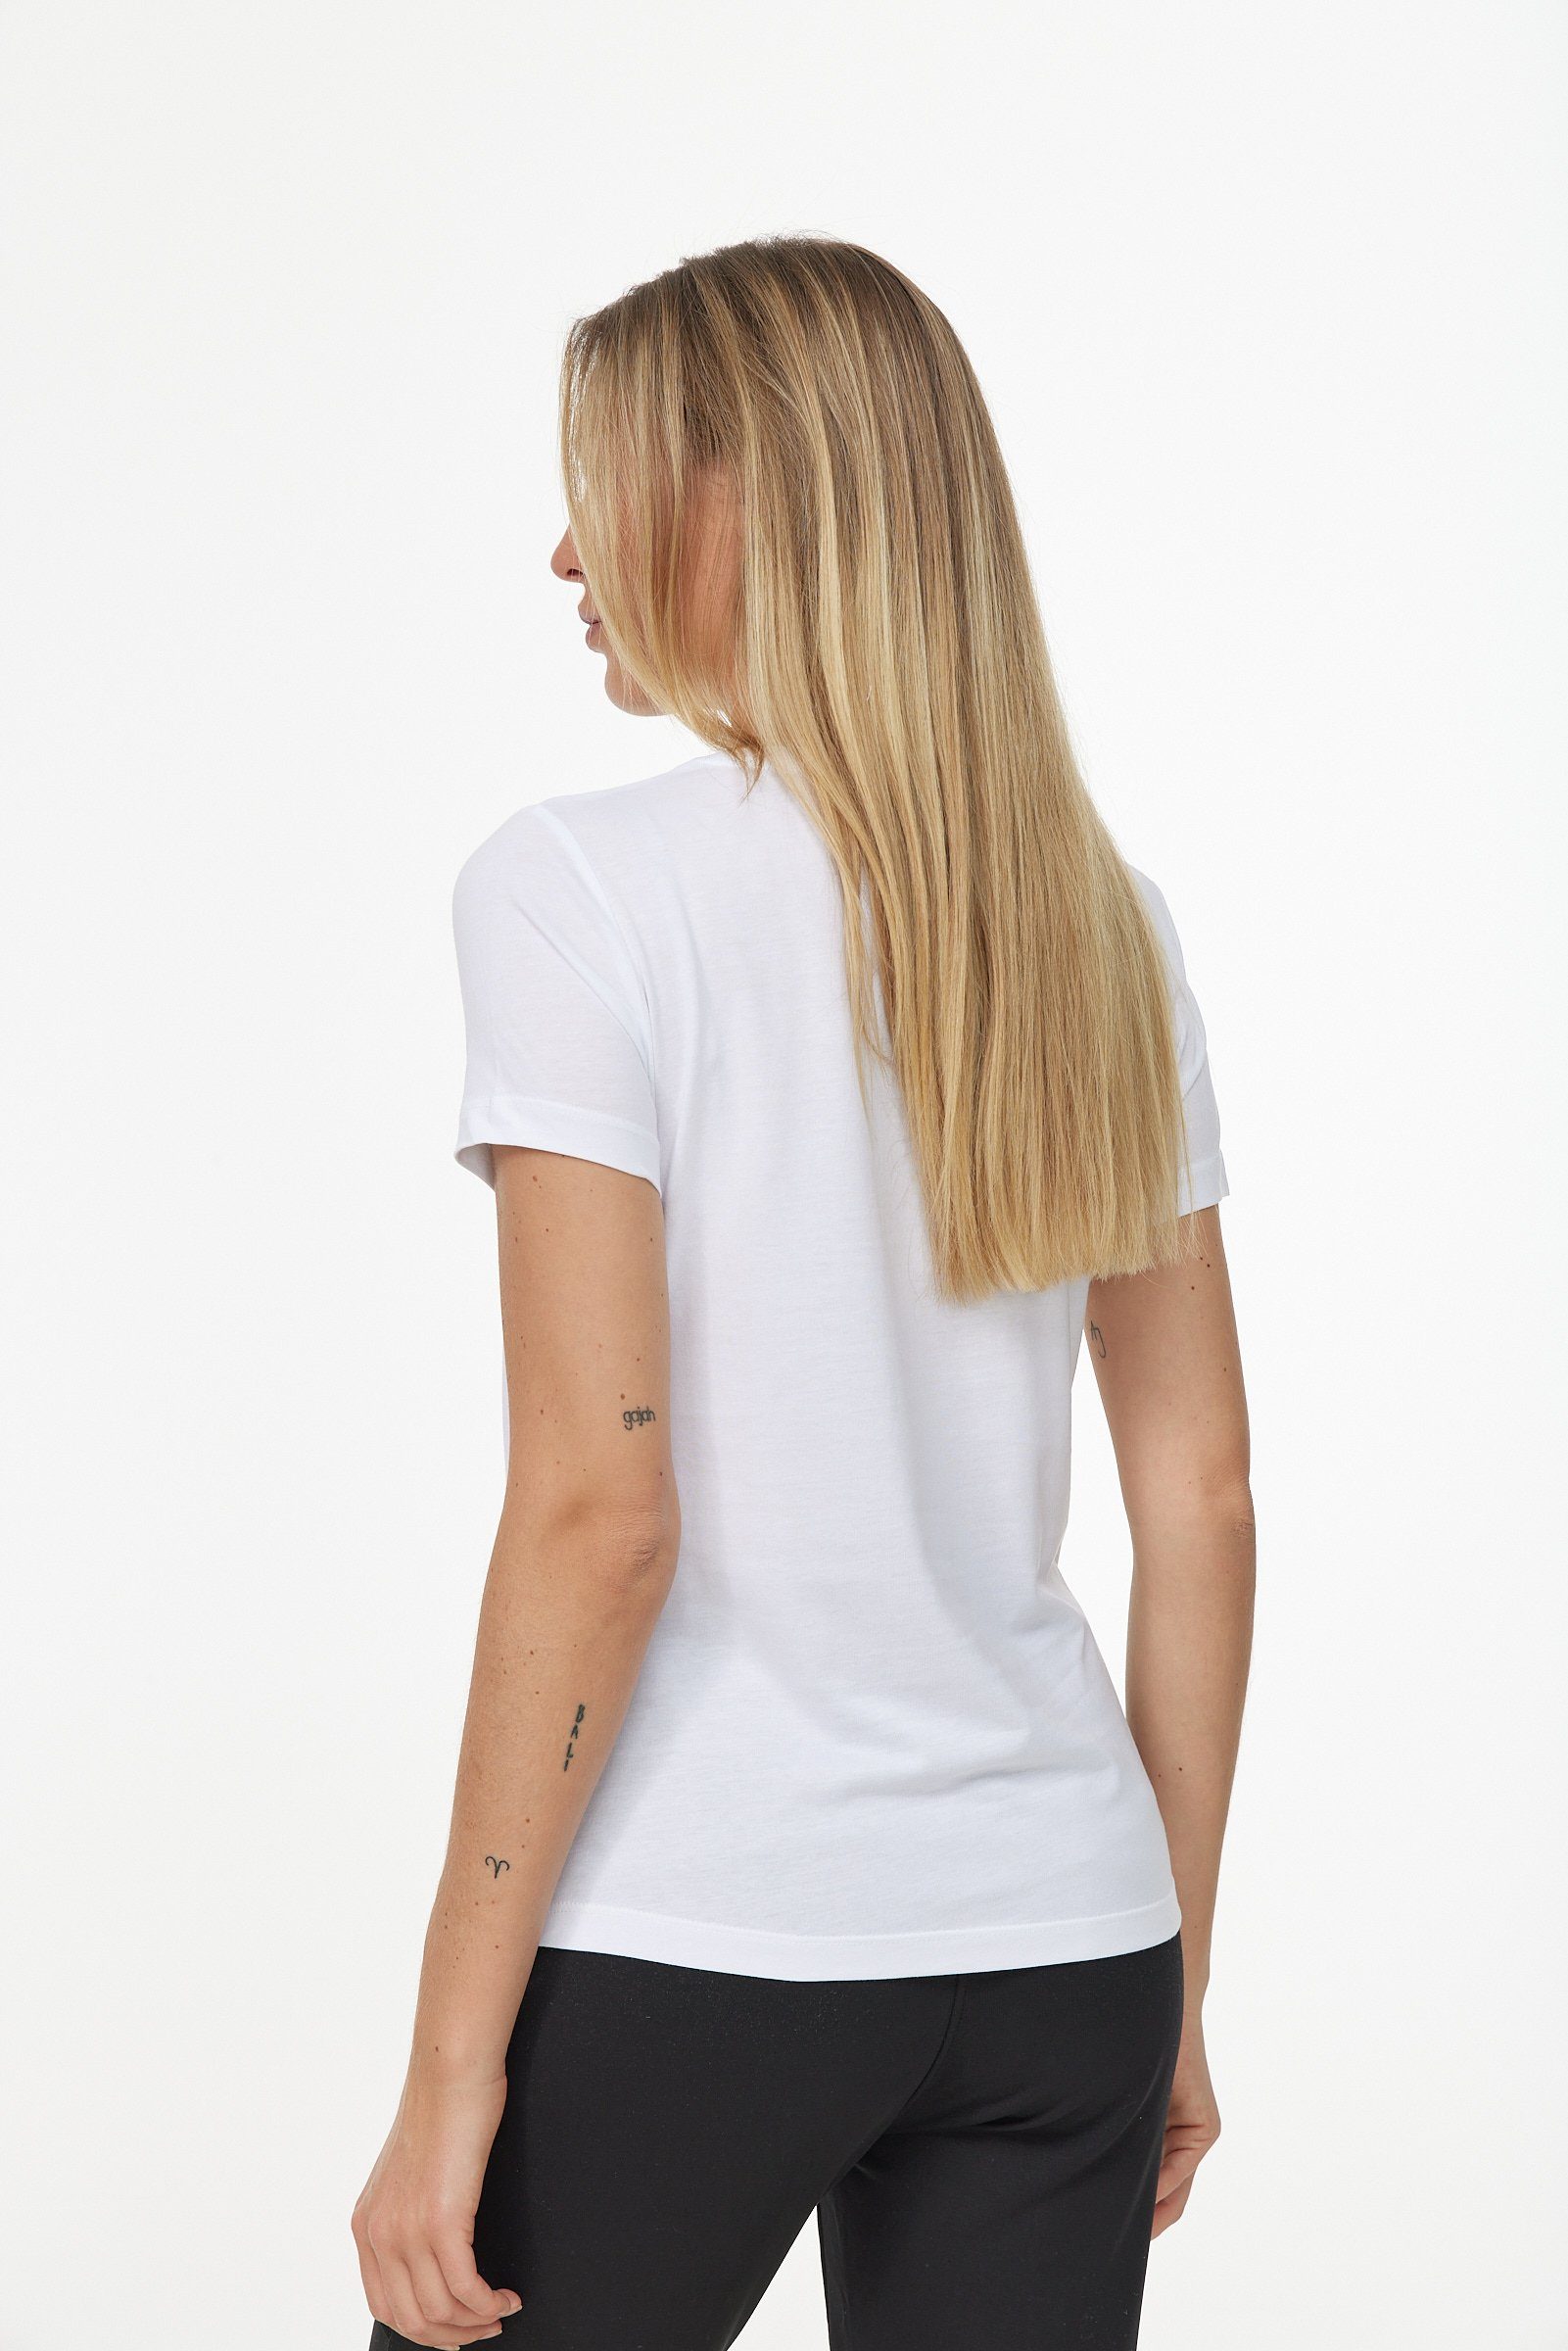 schlichtem T-Shirt in Design weiß-schwarz Decay